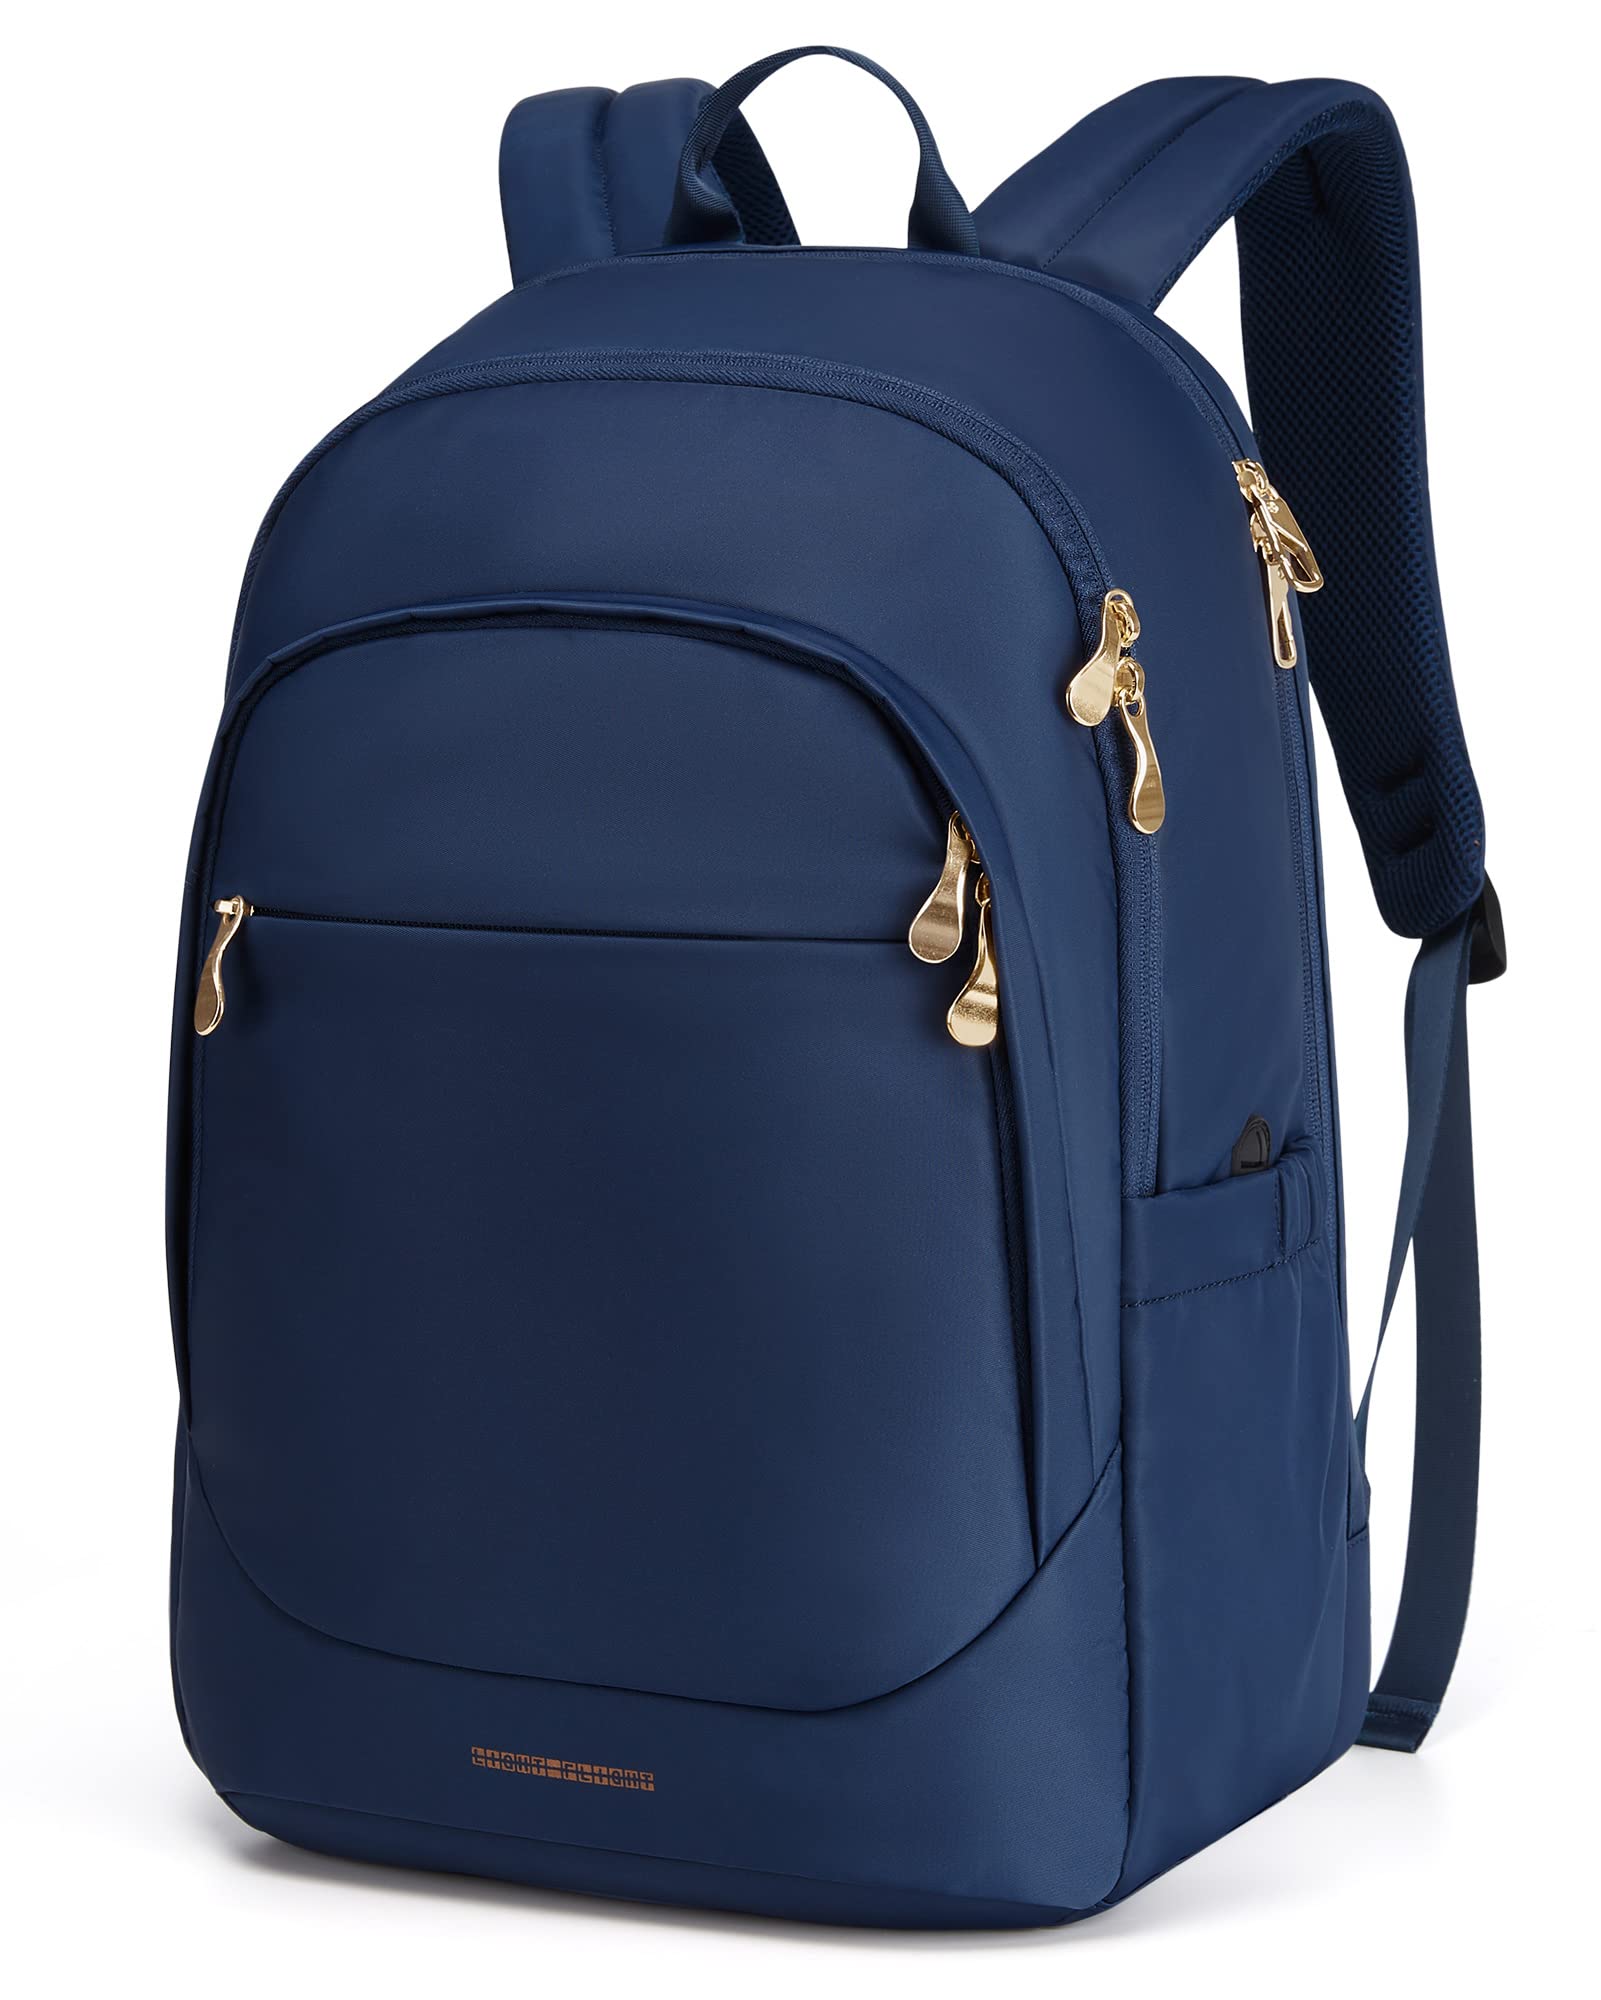 Women's Travel Laptop Backpack